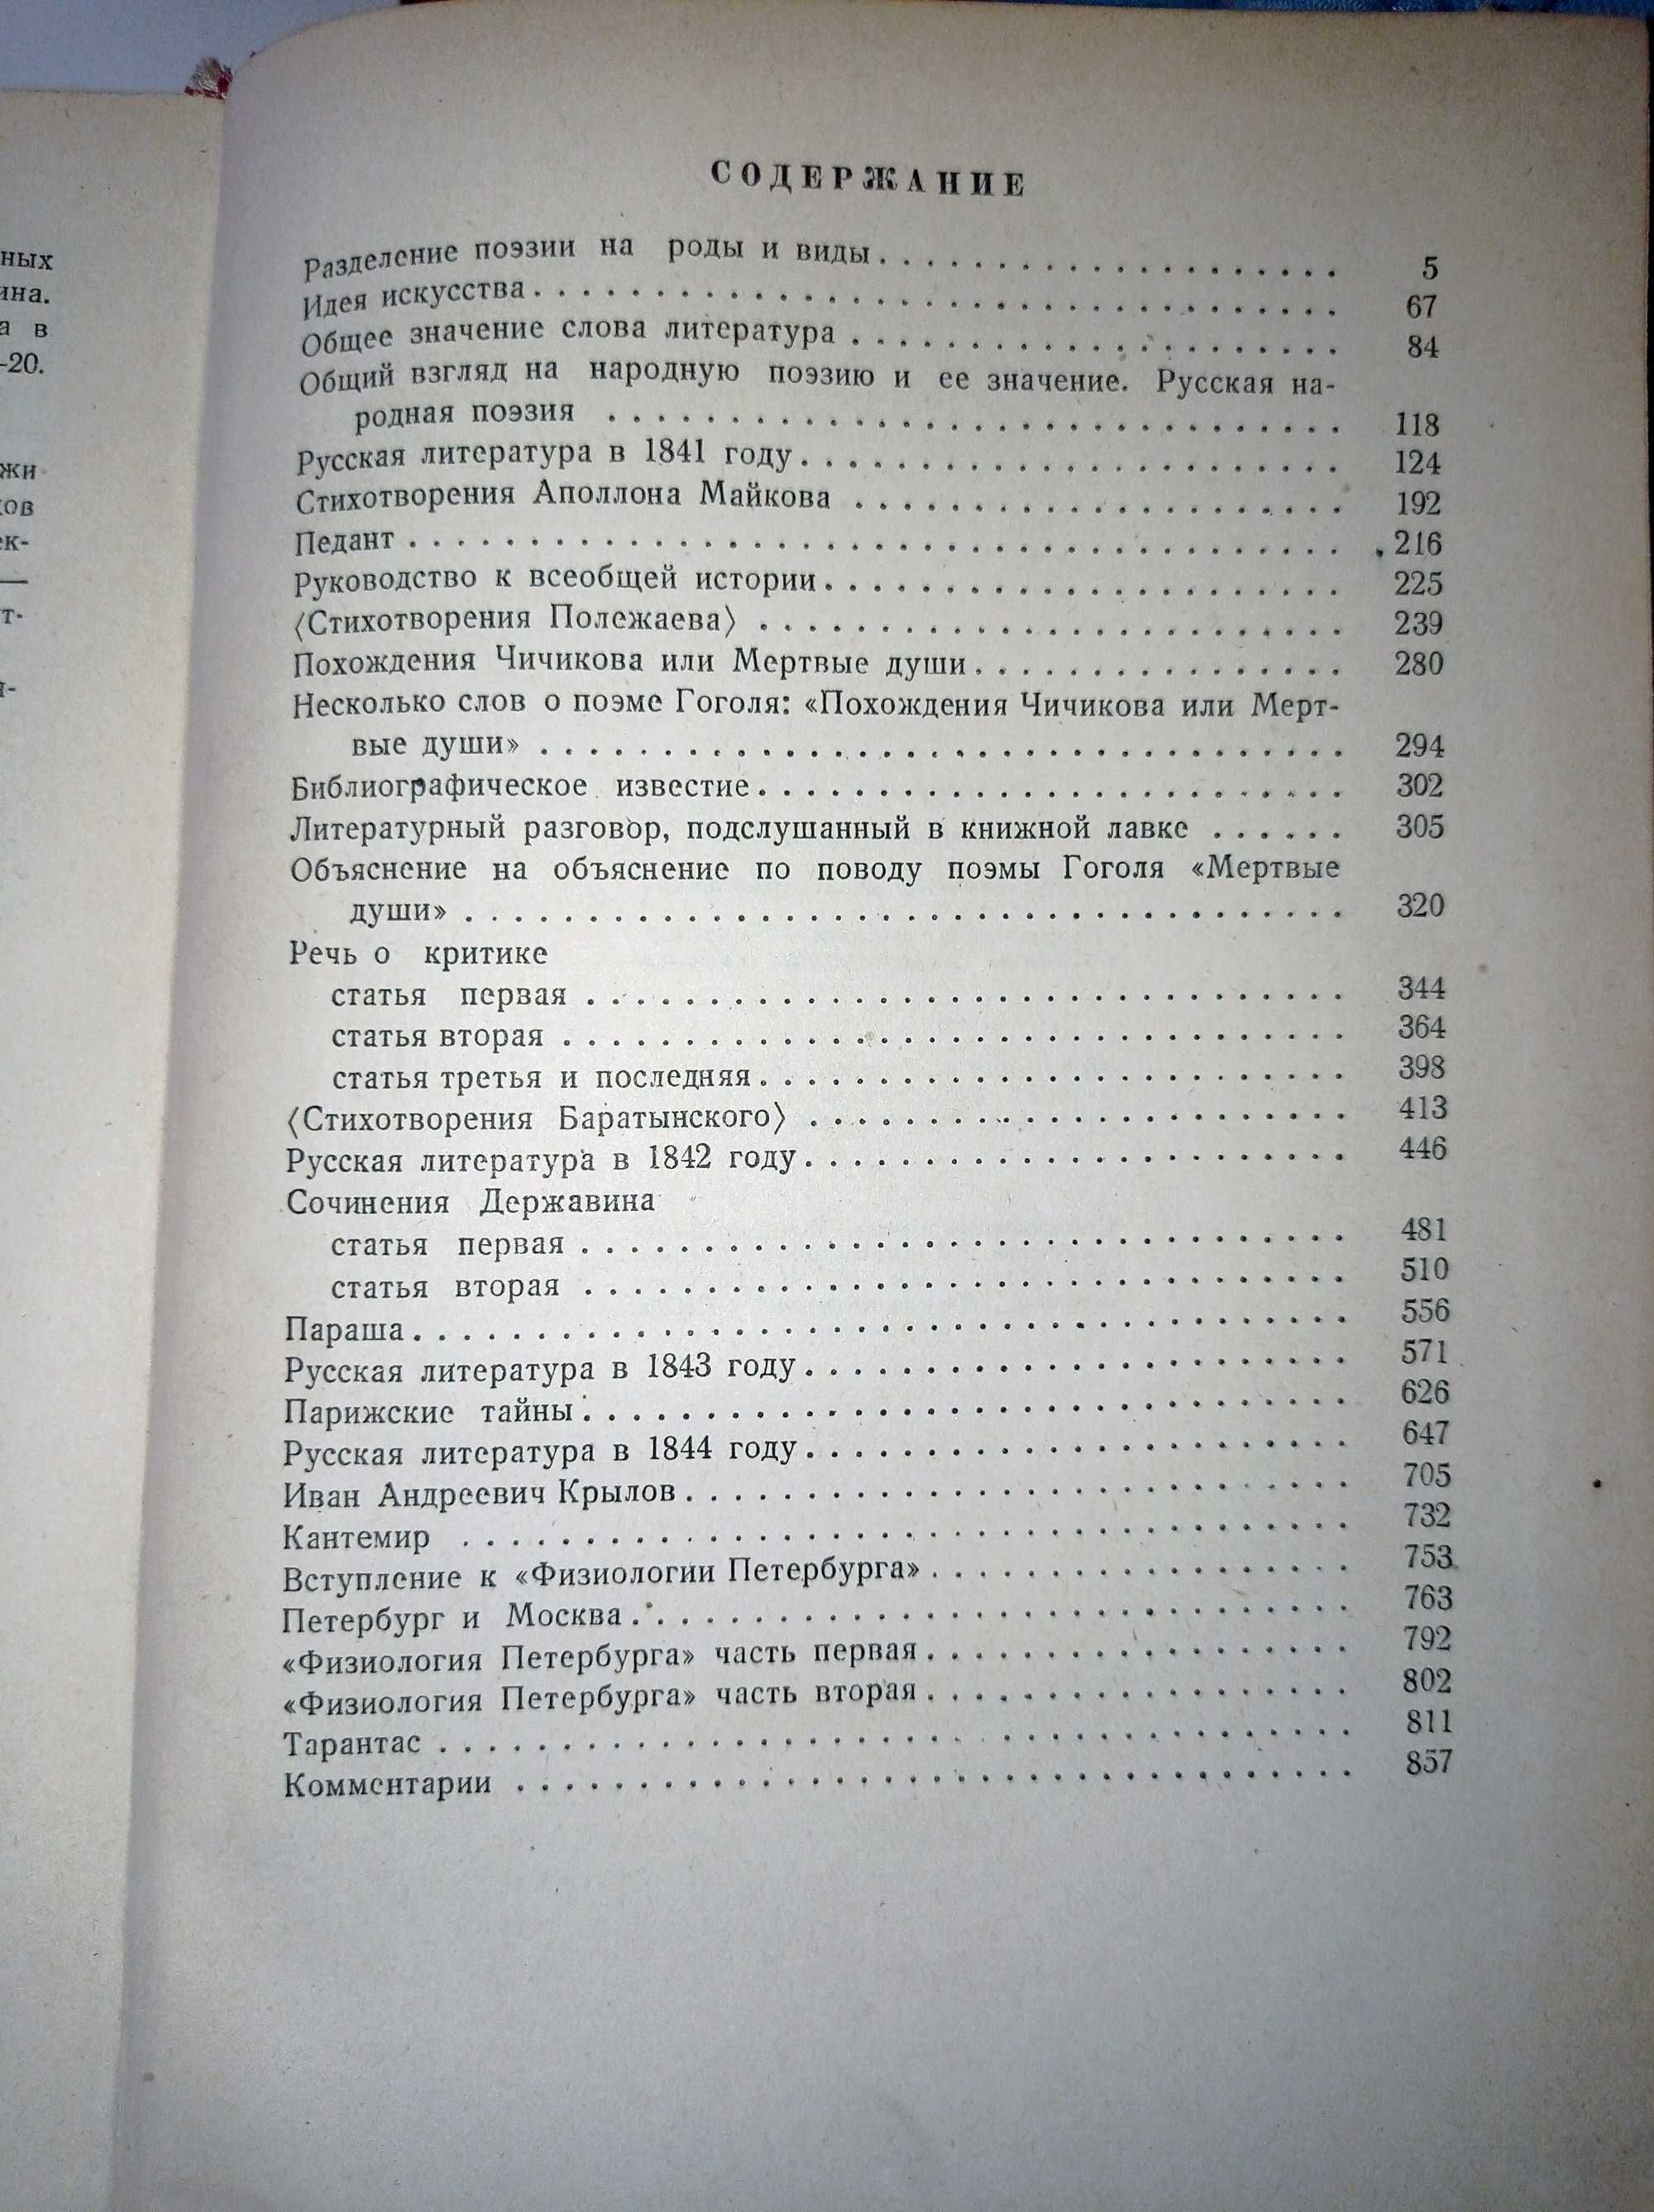 В.Г. Белинский. Собрание сочинений в трех томах. Том ІІ, 1948